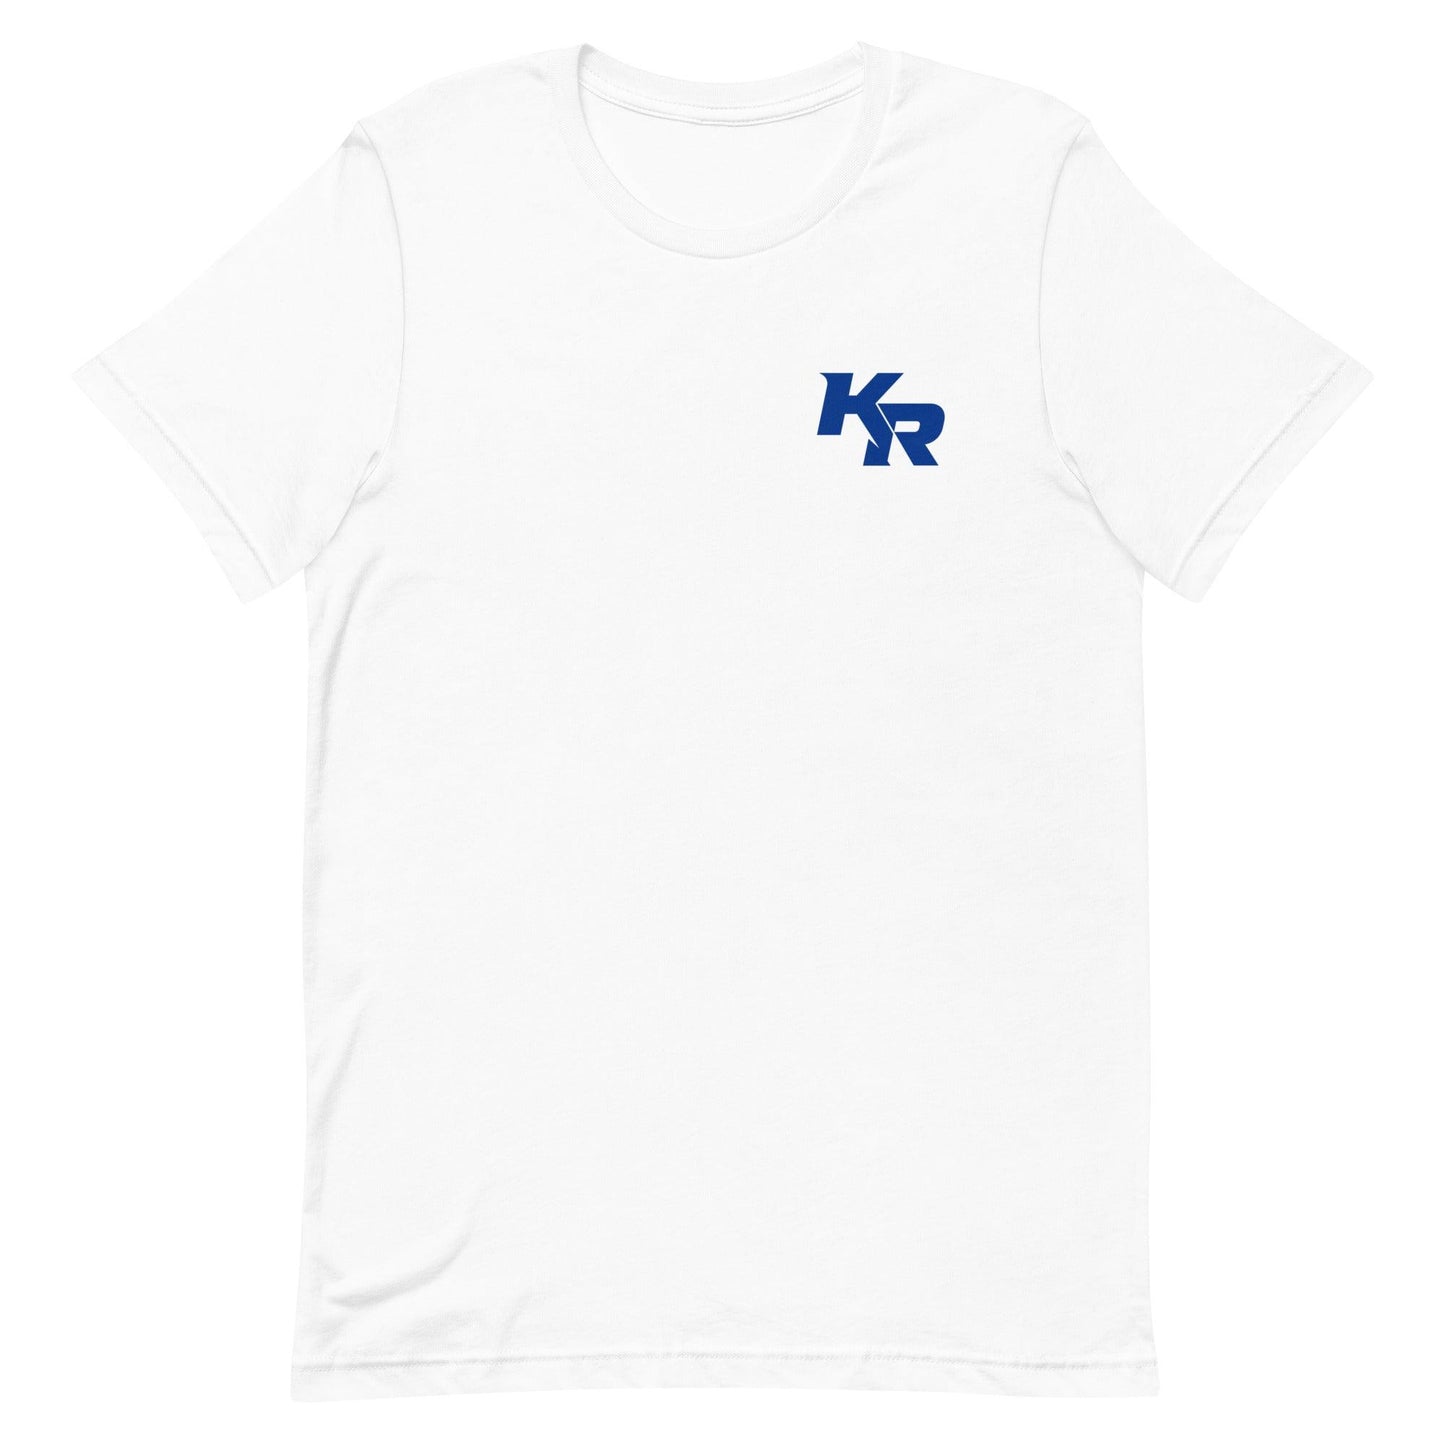 Kimari Robinson "Essential" t-shirt - Fan Arch